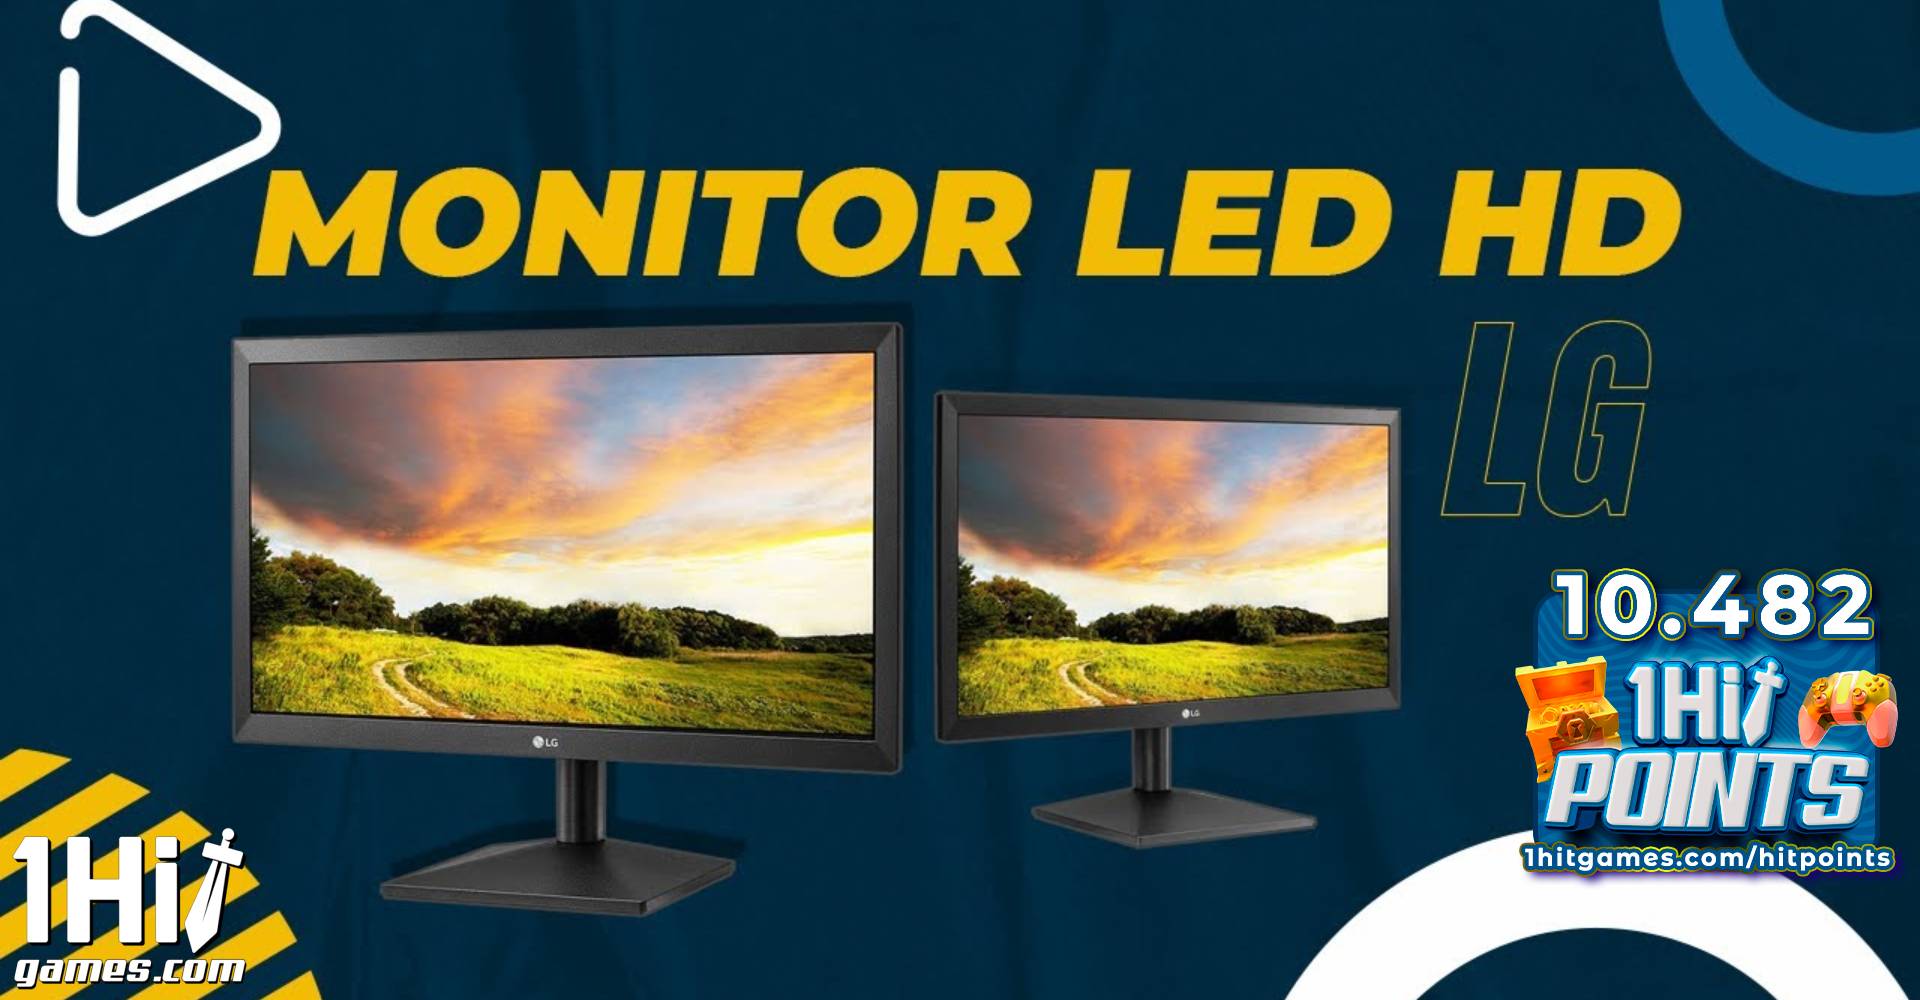 Monitor LG 19.5” LED HD